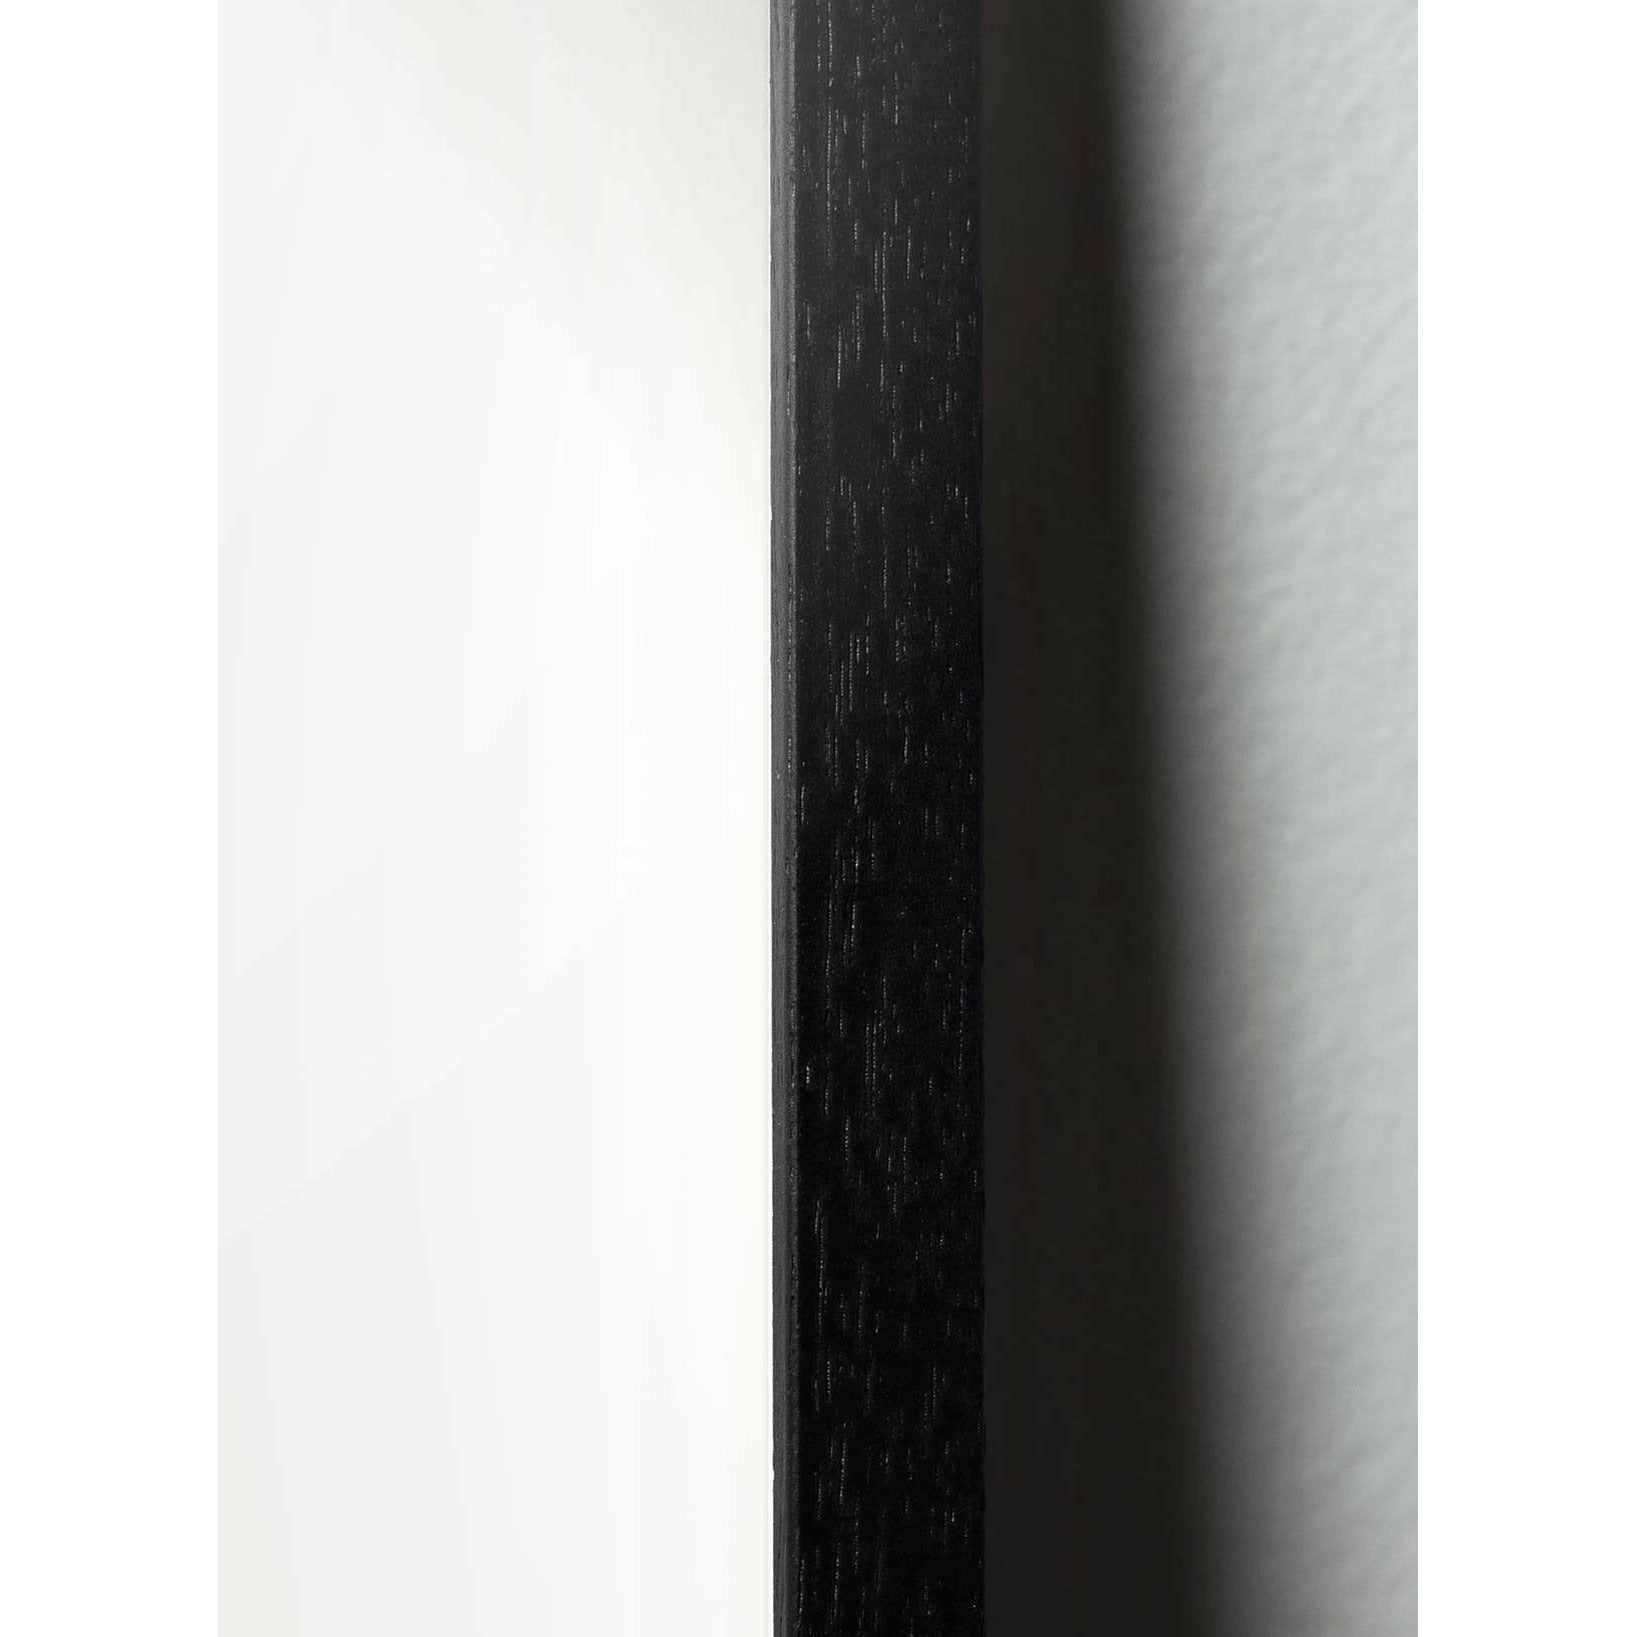 Brainchild Ant Line Poster, Rahmen aus schwarz lackiertem Holz 30x40 cm, weißer Hintergrund